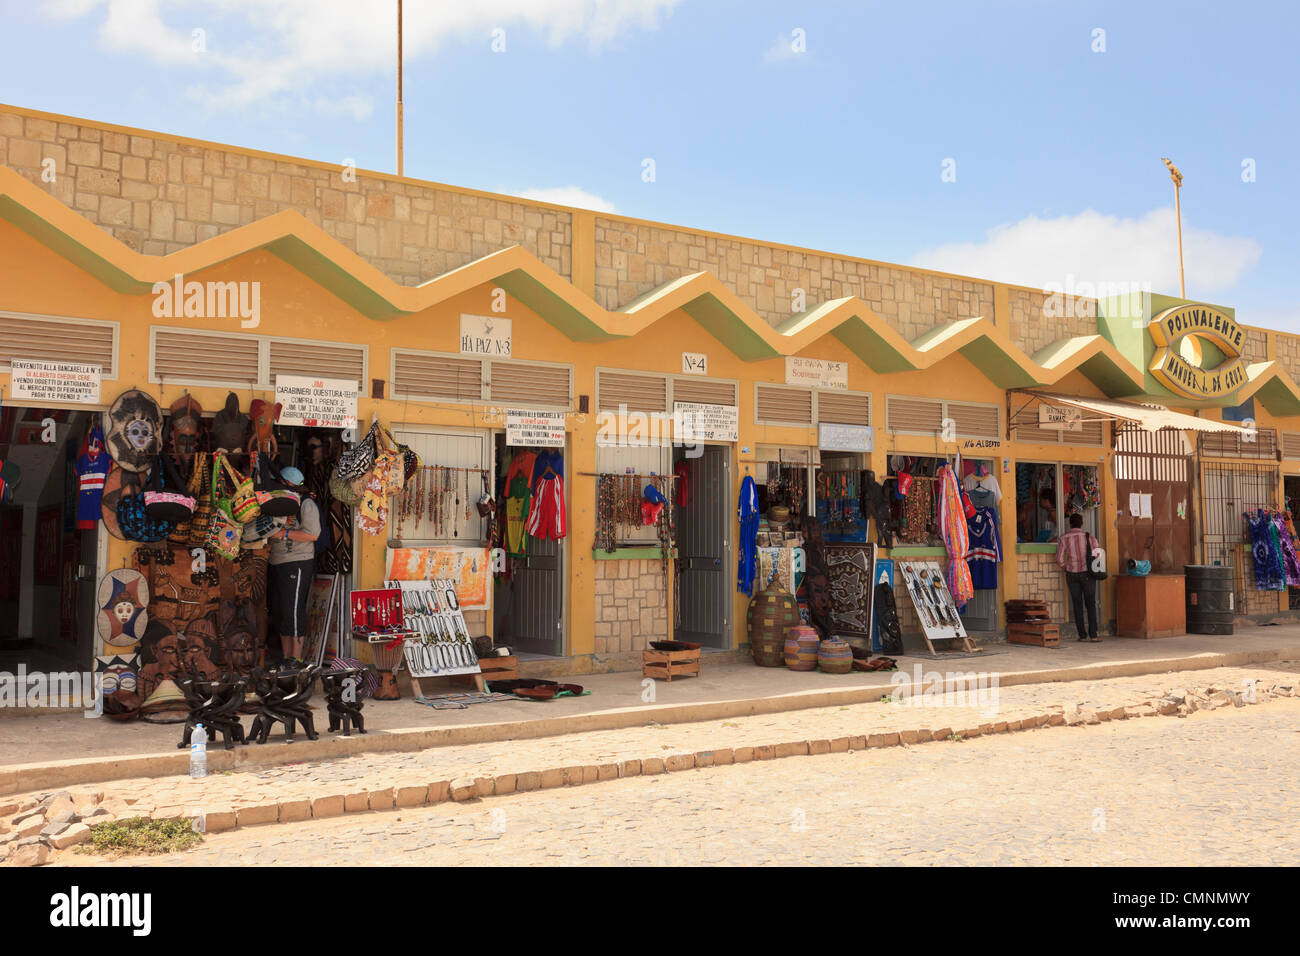 Geschenk- und Souvenirläden, die von lokalen Händler in der Stadt besaß. Sal Rei, Boa Vista, Kap Verde Inseln Stockfoto